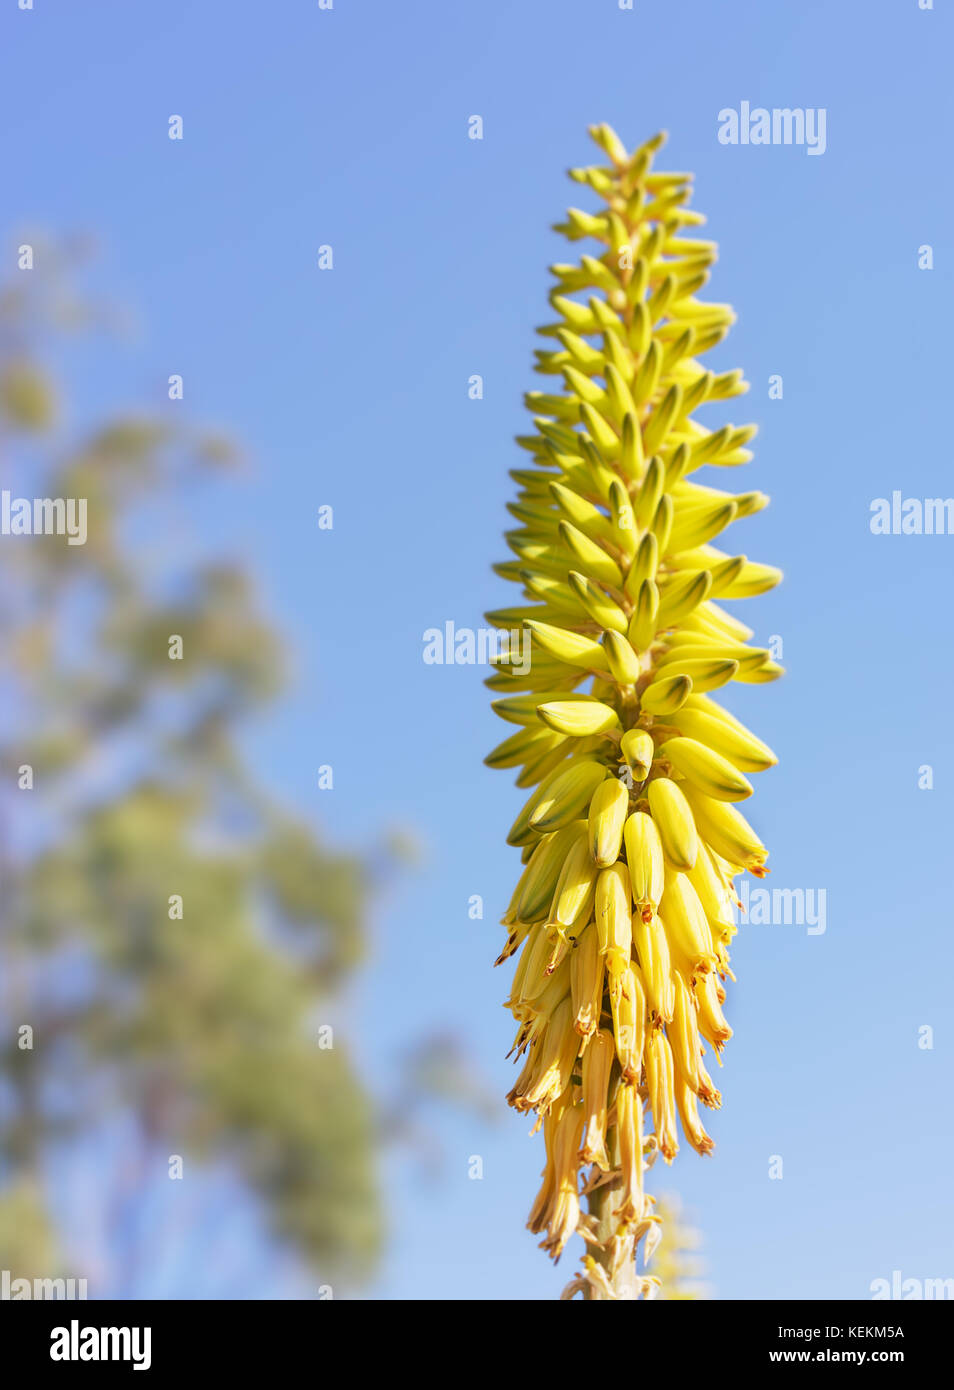 Tall amarillo aloe vera flores spike contra el fondo de cielo azul Foto de stock